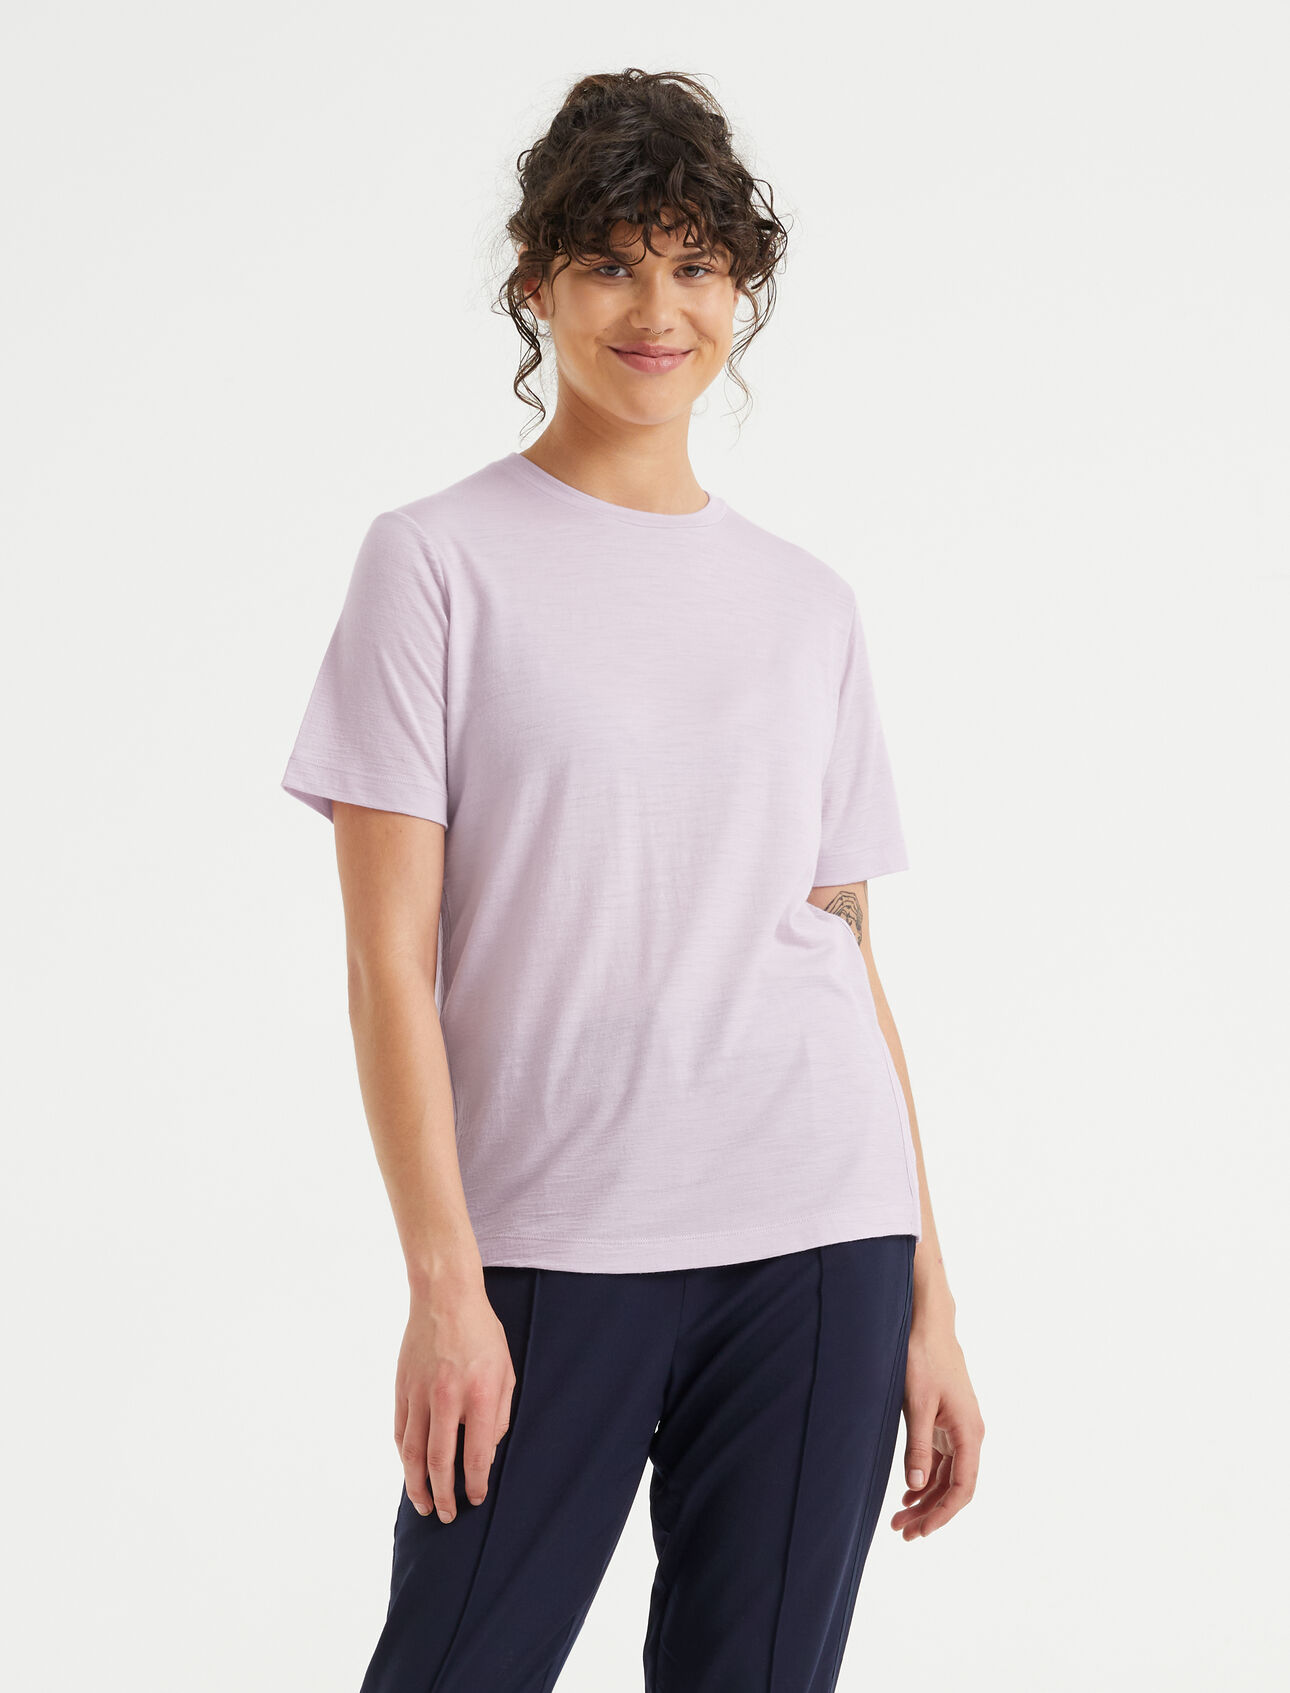 Dam T-shirt i merino Merino t-shirt är en otroligt mångsidig tröja med mjukt, ventilerande jerseytyg i 100% merino, vilket ger en naturligt ventilerande komfort när du är i farten. 